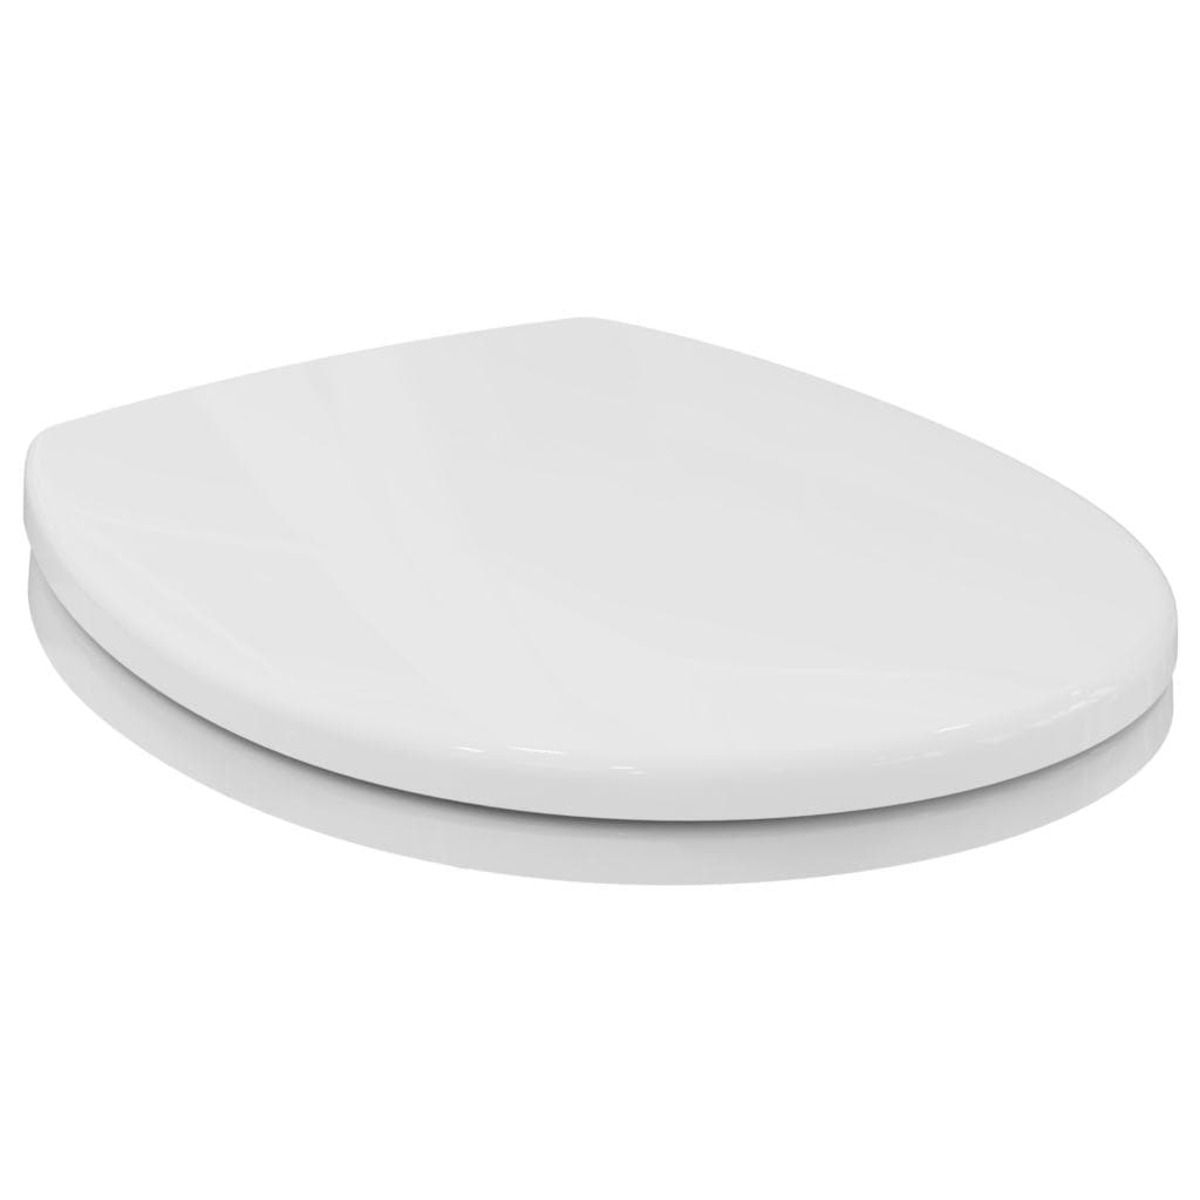 Wc prkénko Ideal Standard Contour 21 duroplast bílá S407701 - Siko - koupelny - kuchyně